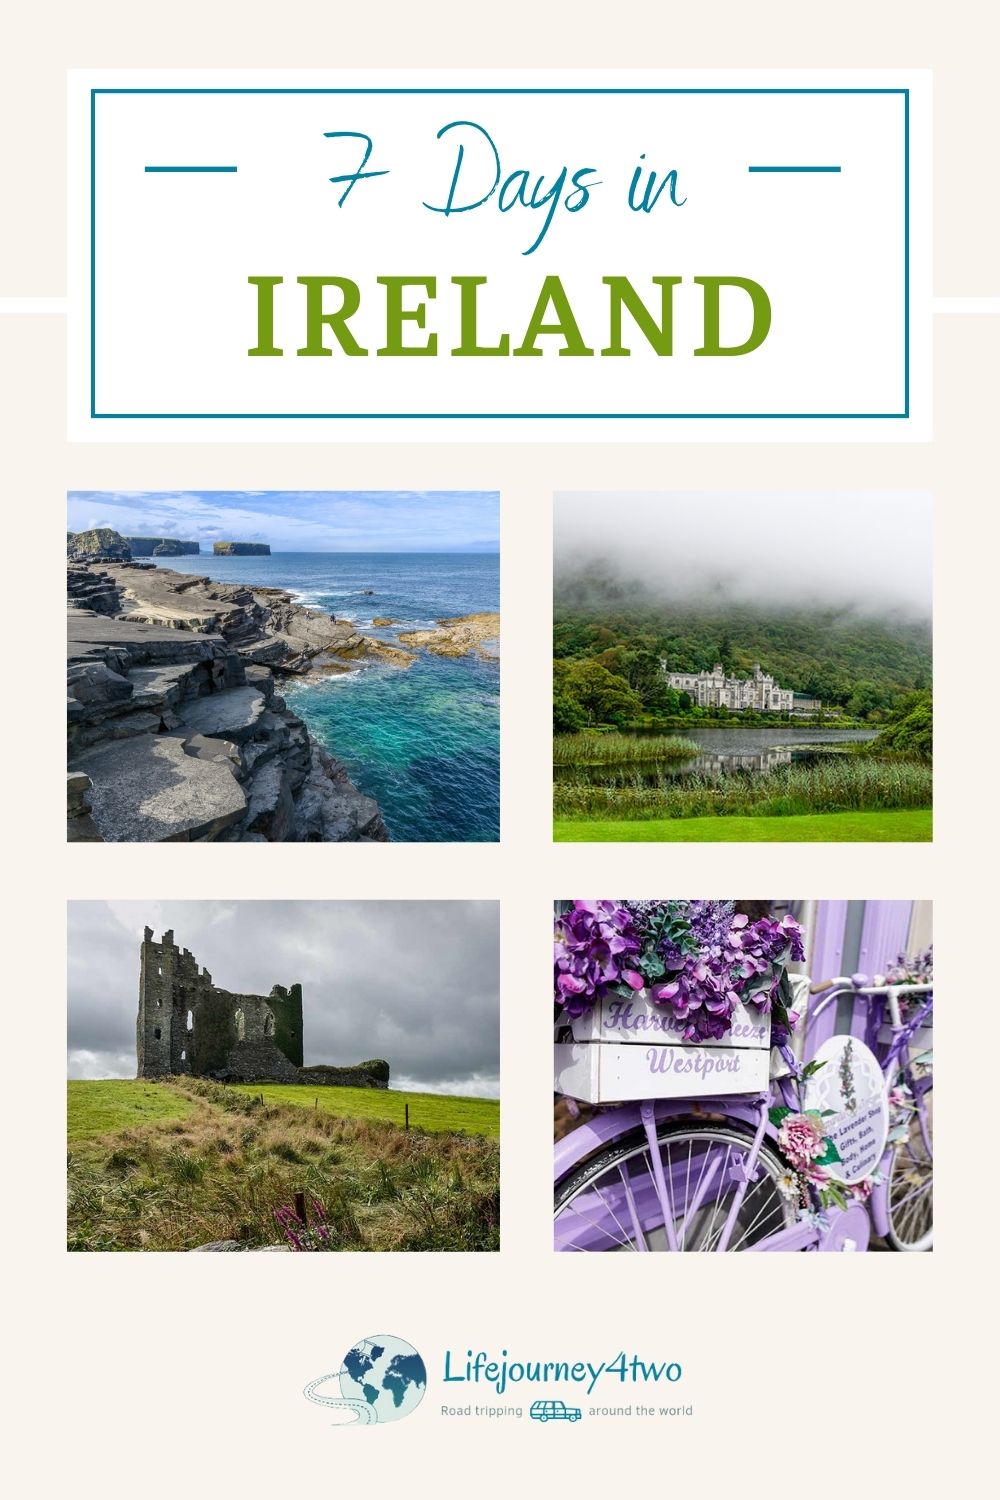 Ireland 7 day itinerary Pinterest pin